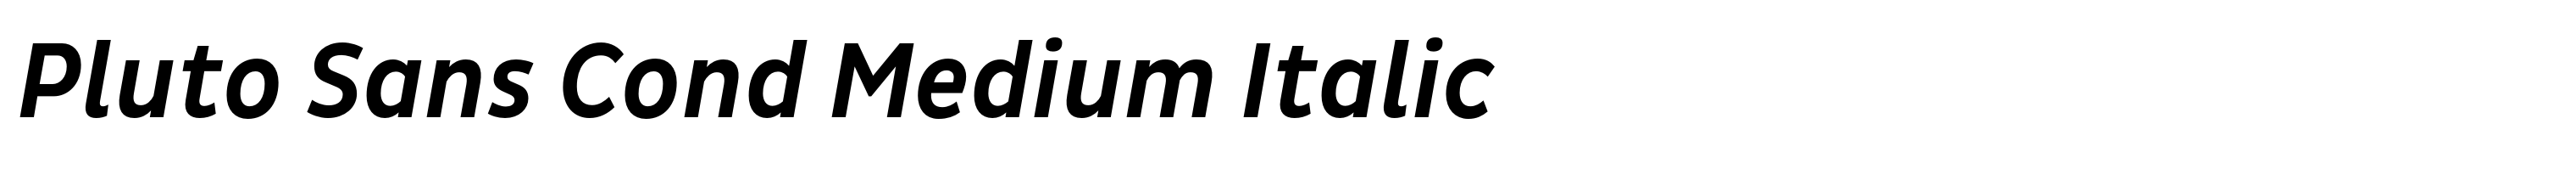 Pluto Sans Cond Medium Italic